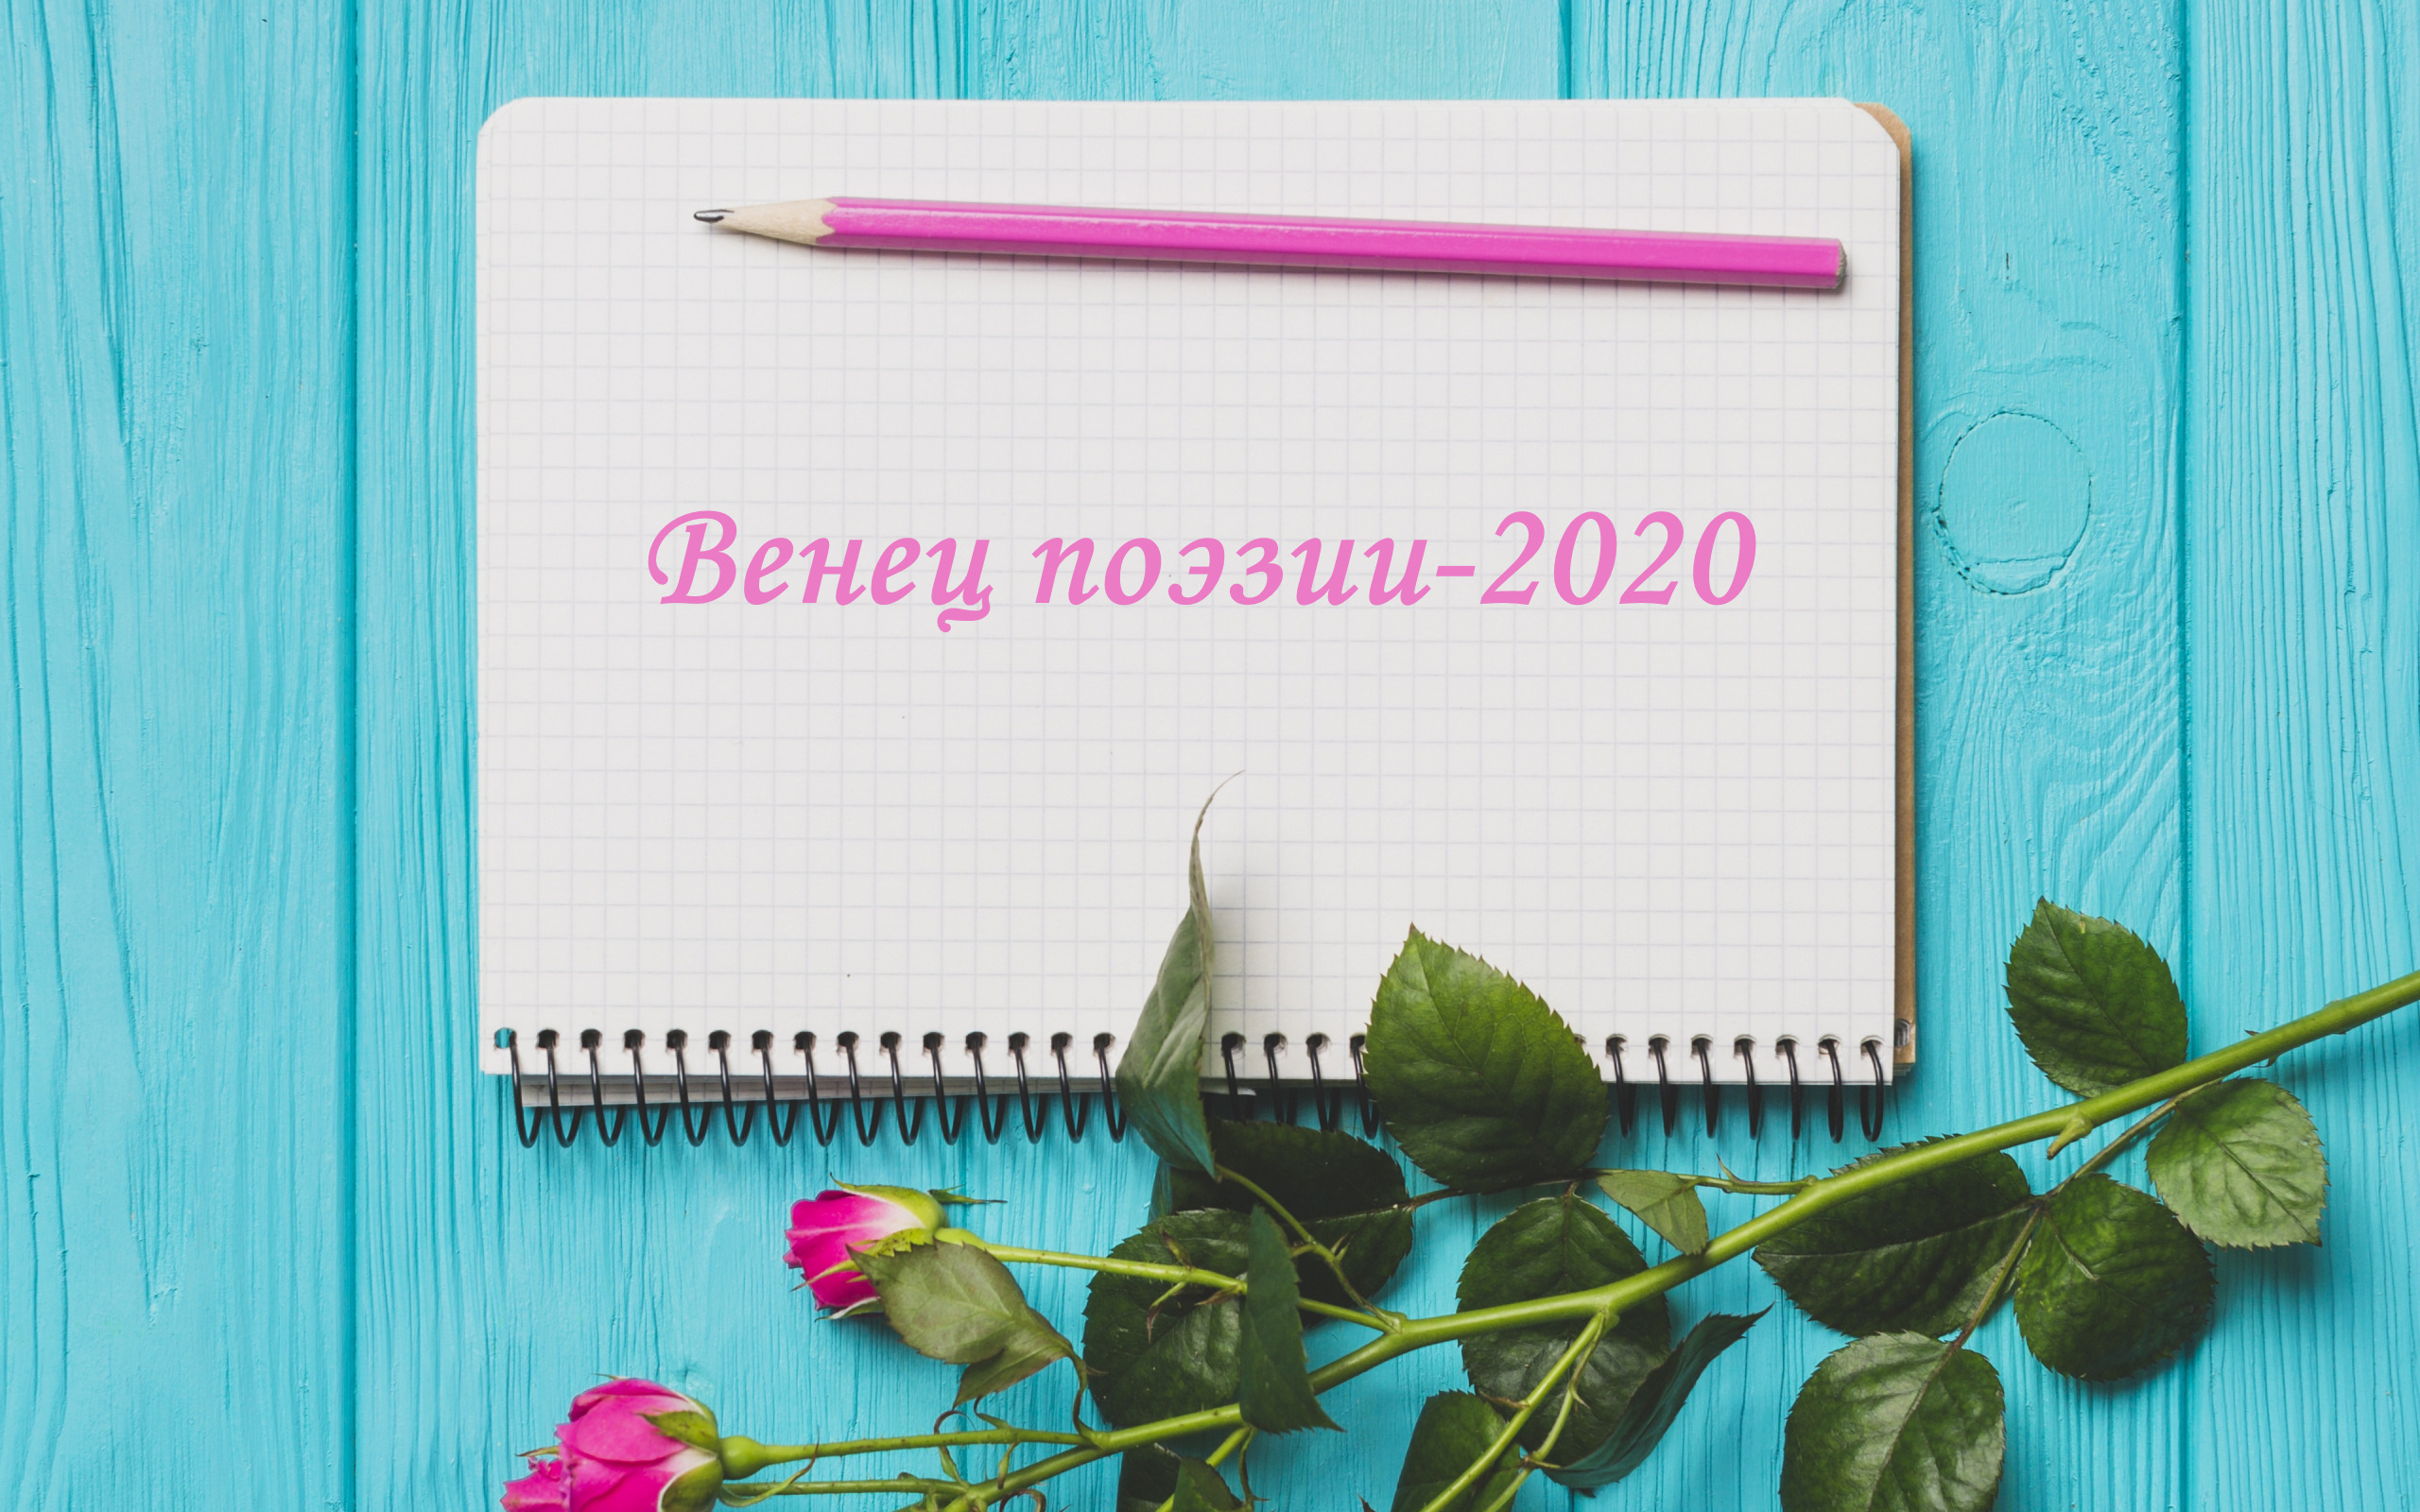 Вы сейчас просматриваете Более 300 авторов подали заявки на участие в Поволжском конкурсе “Венец поэзии-2020”